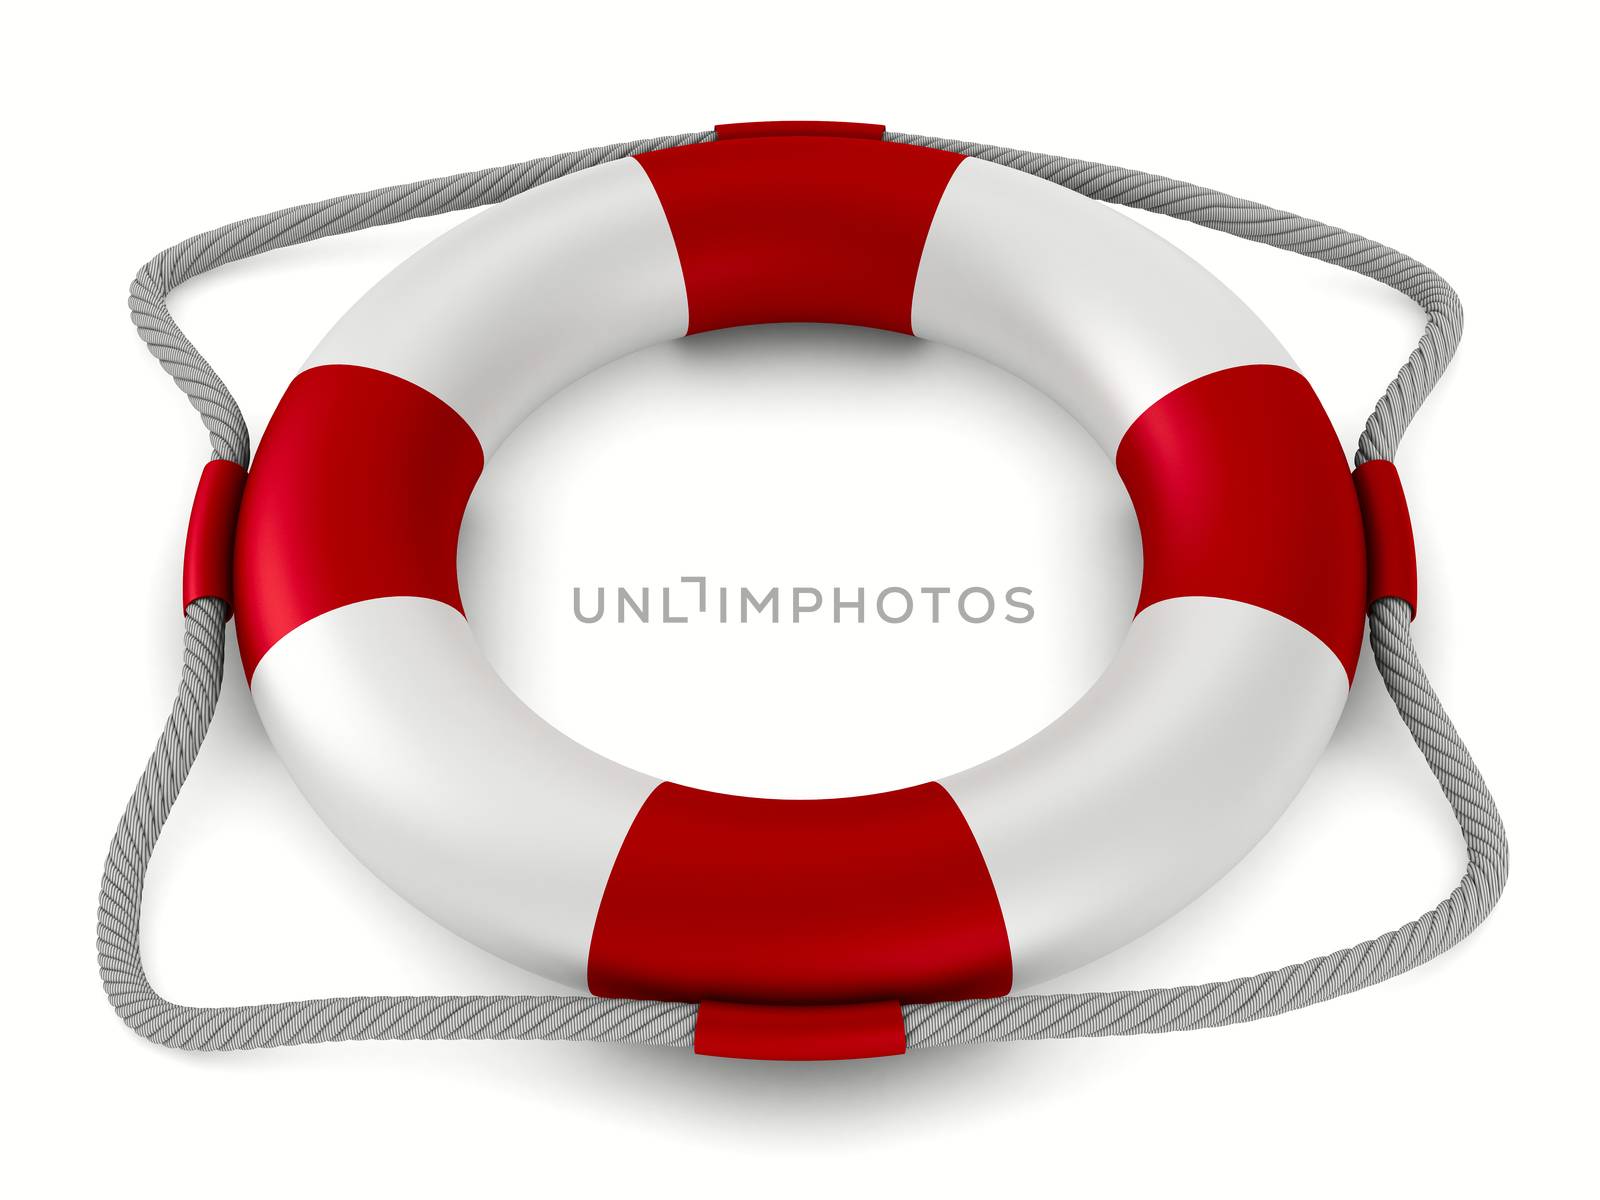 lifebuoy on white background. Isolated 3D image